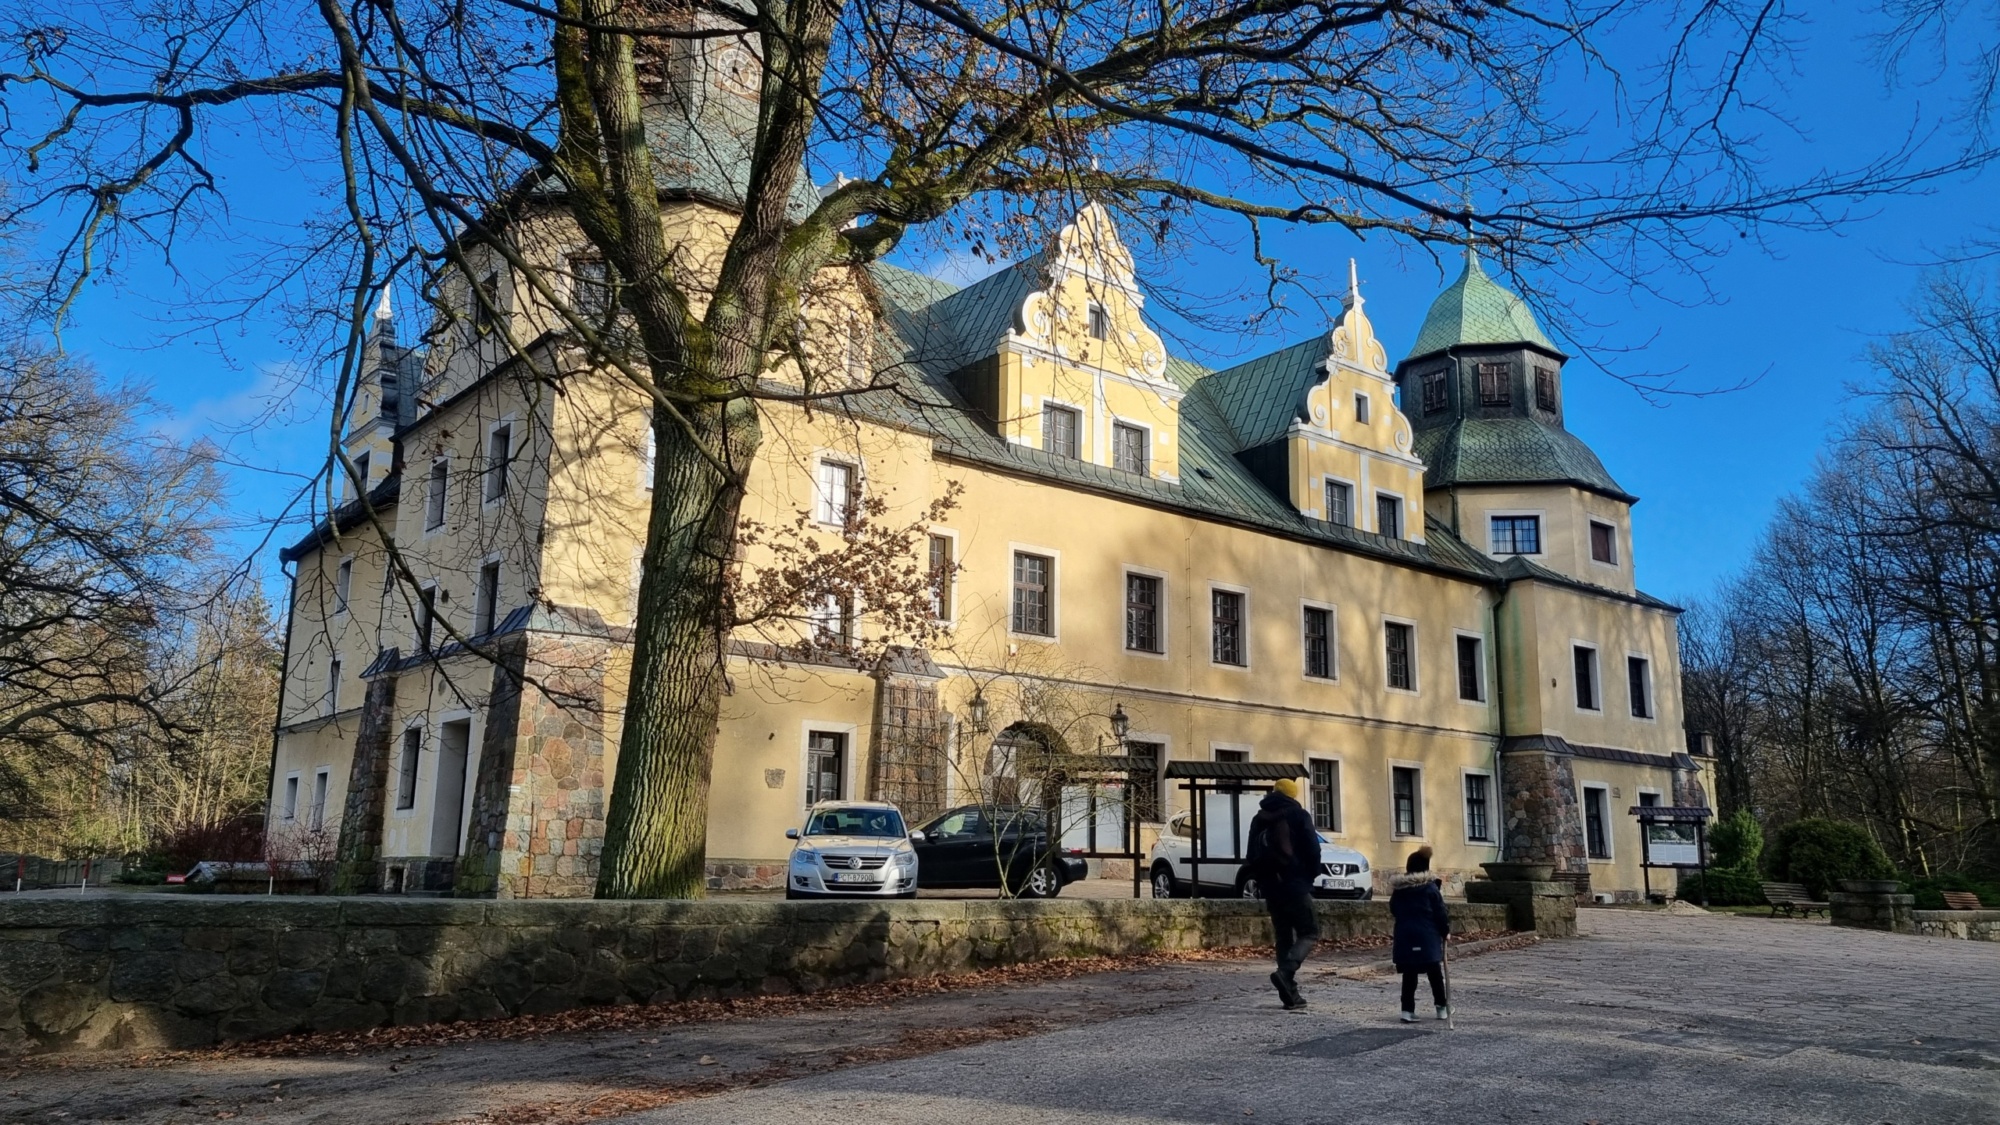 Zamek Goraj – malownicza ścieżka edukacyjna